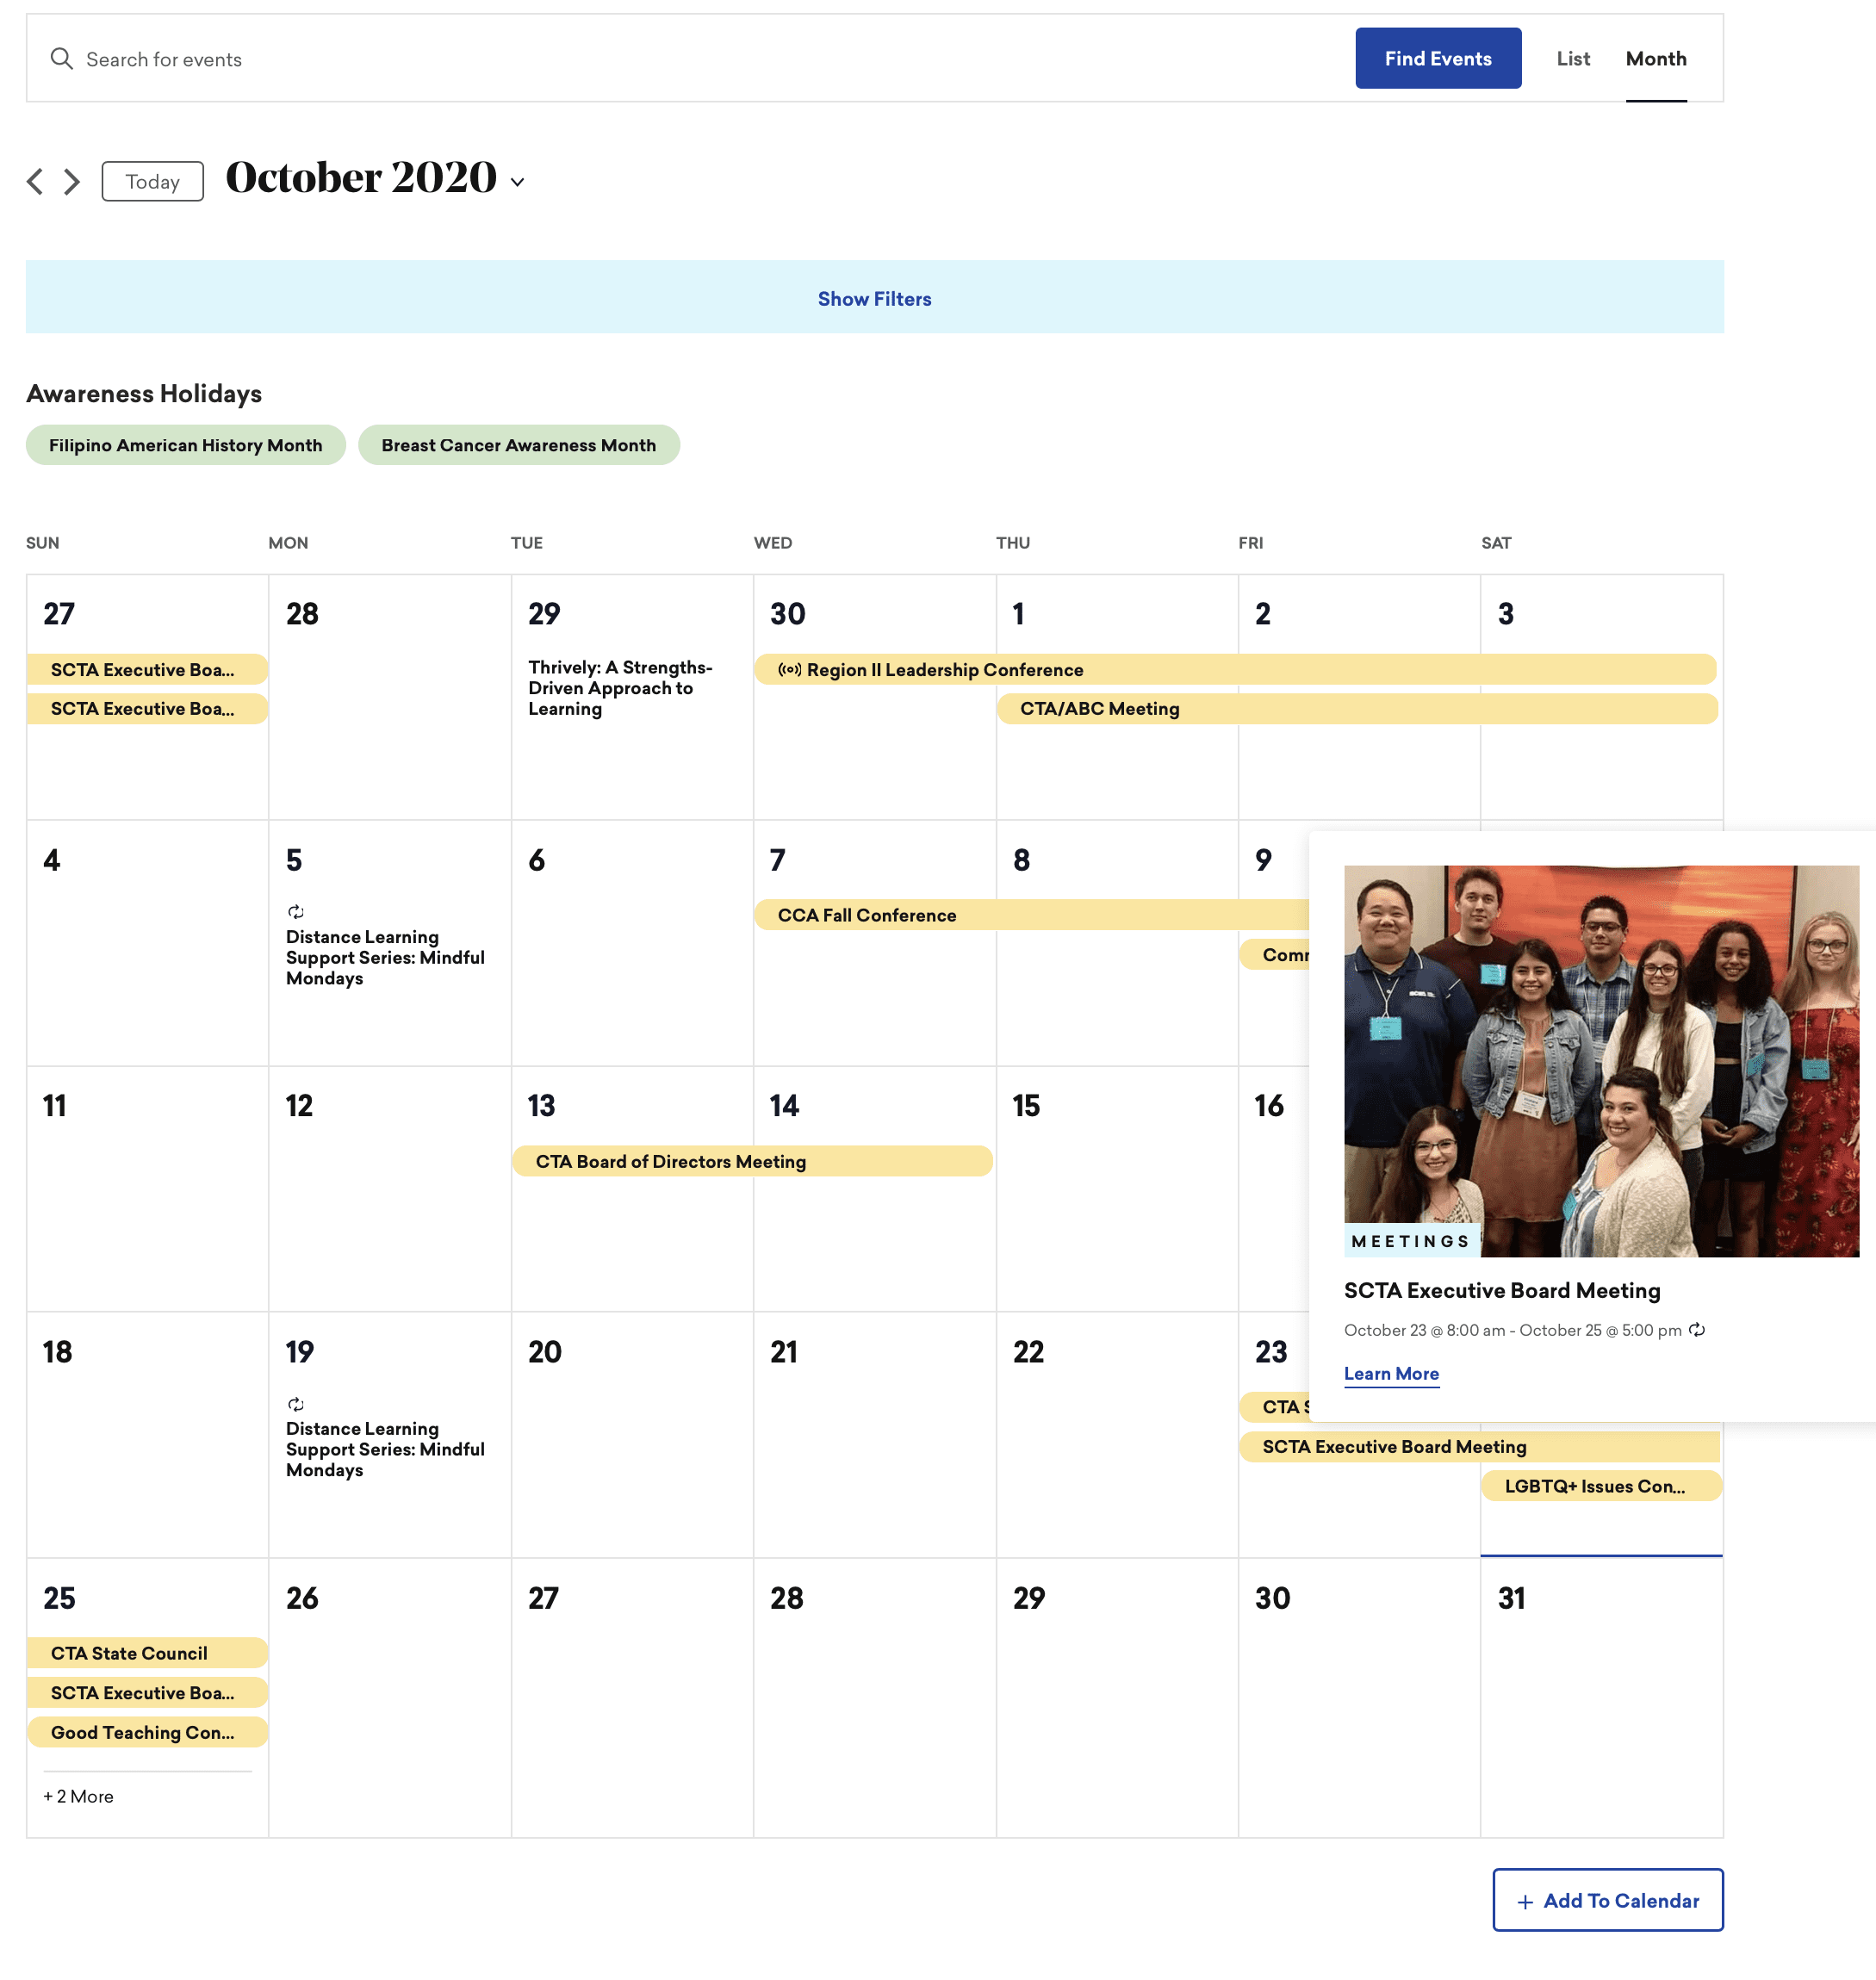 View of online calendar